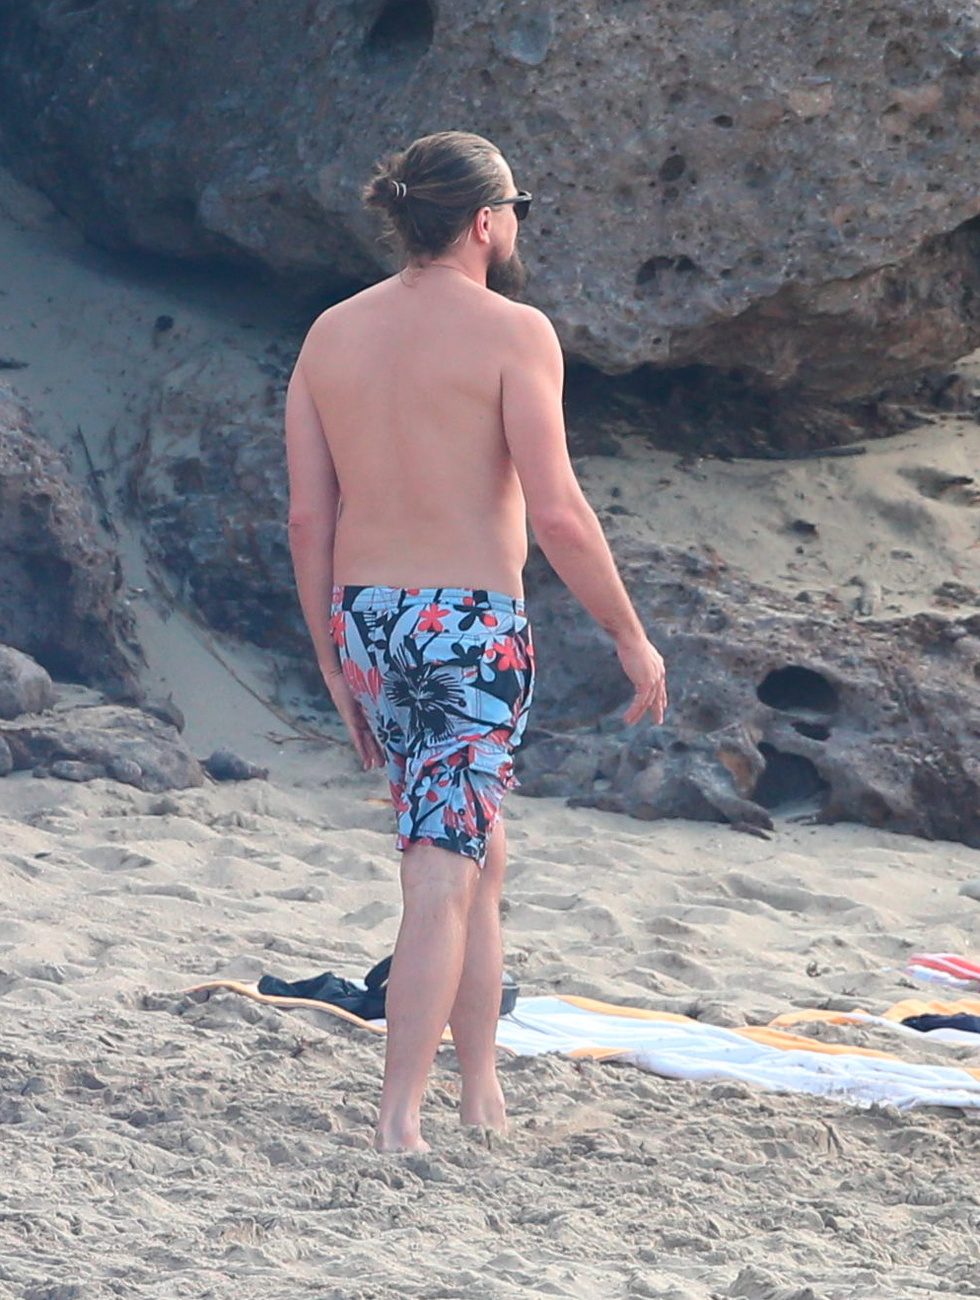 Leonardo DiCaprio egy jachton folytatja a nyaralást